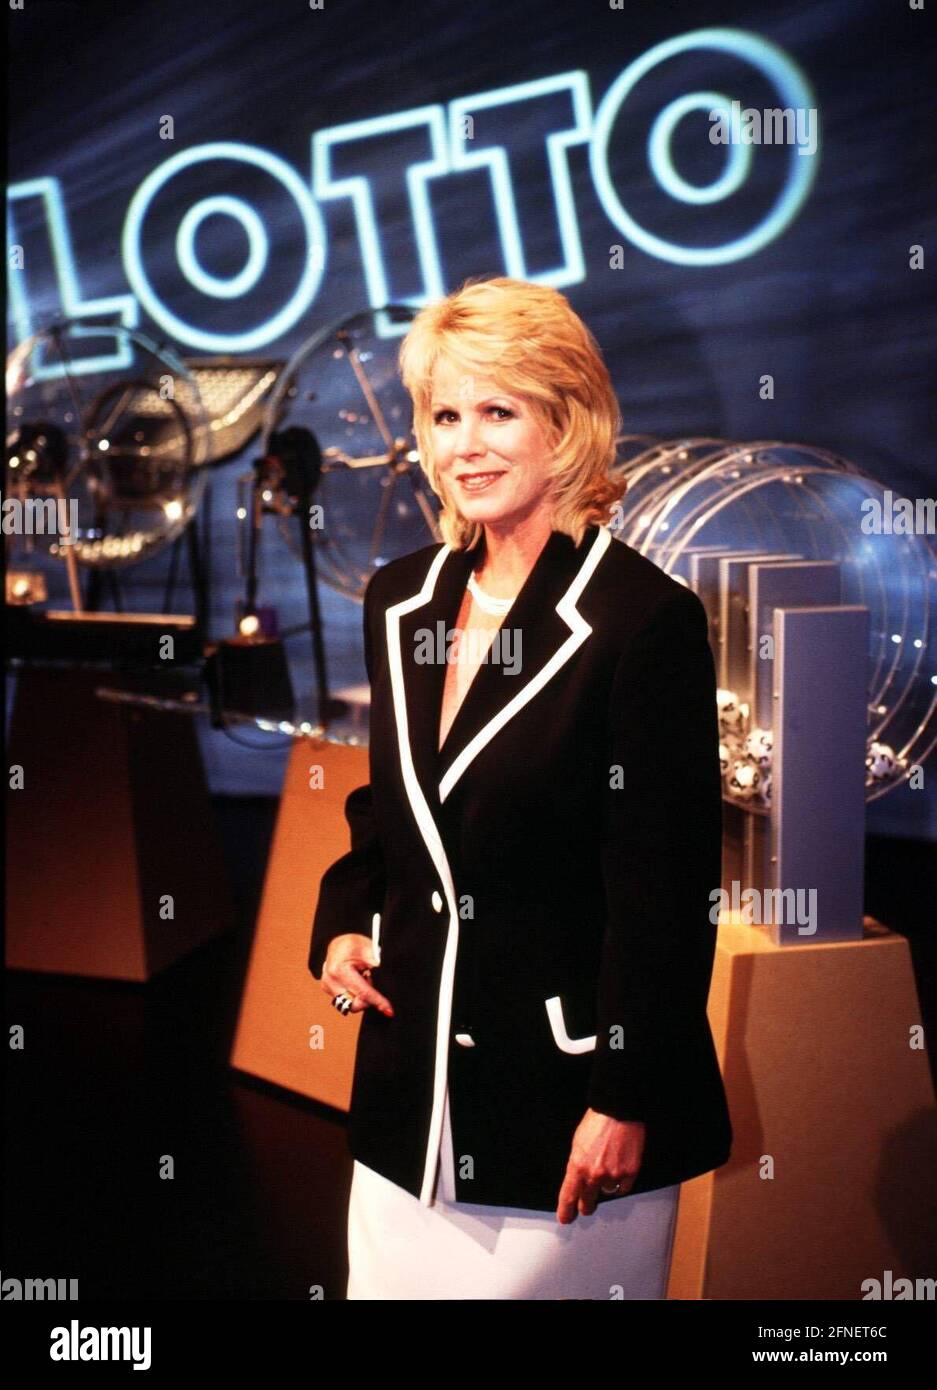 Lotto-Fee Karin Tietze-Ludwig feiert am 31. Mai 2001 ihren 60. Geburtstag.  Im Januar 1998 präsentierte der TV-Sprecher zum letzten Mal das „Aufwirren  der Lottozahlen“. Sie wollte sich mehr Zeit für ihr Privatleben